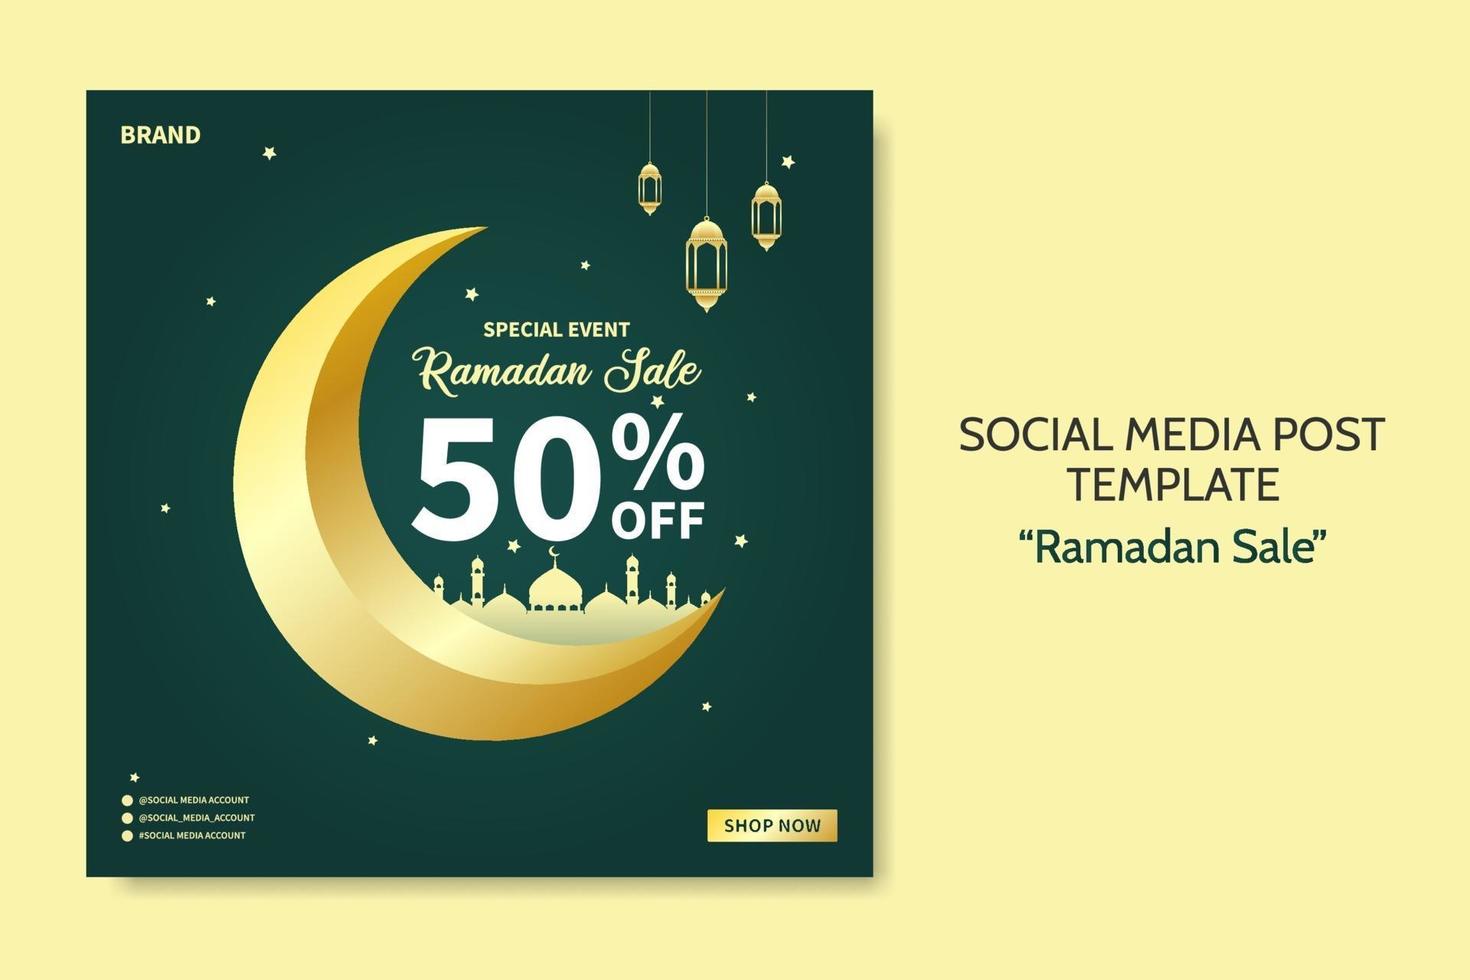 modelo de postagem de mídia social de venda ramadan. publicidade de banner da web com estilo de cor verde e dourado para cartão, voucher, evento islâmico. vetor